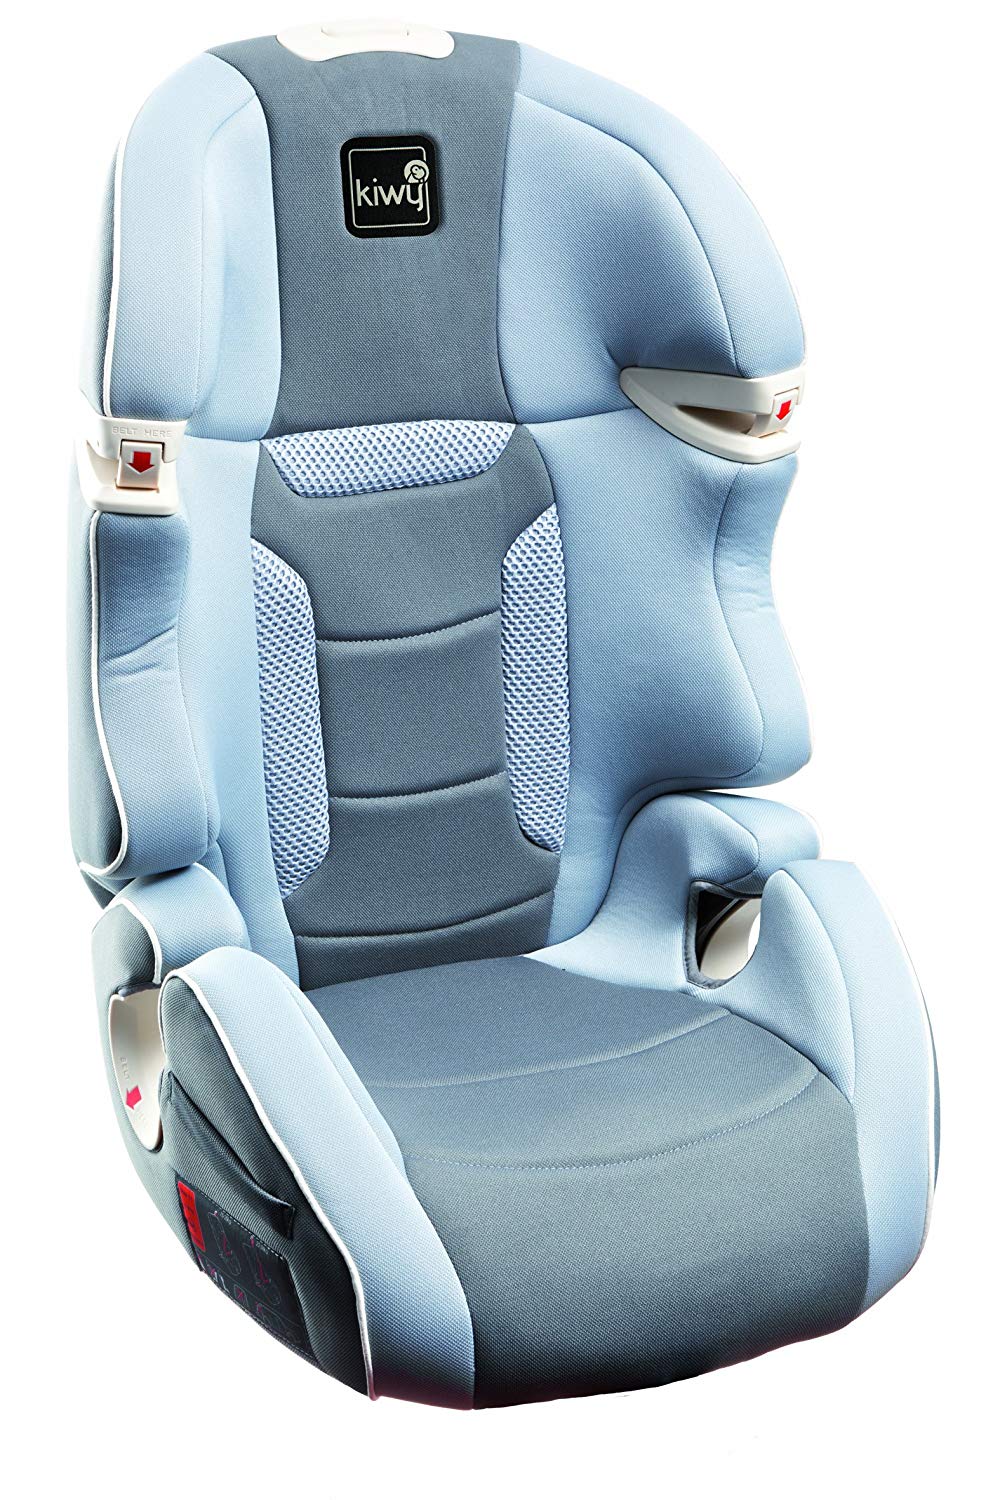 Kiwy Universal Car Seat Group 2/3 15-36 Kg, ECE R44/04 Stone Grey